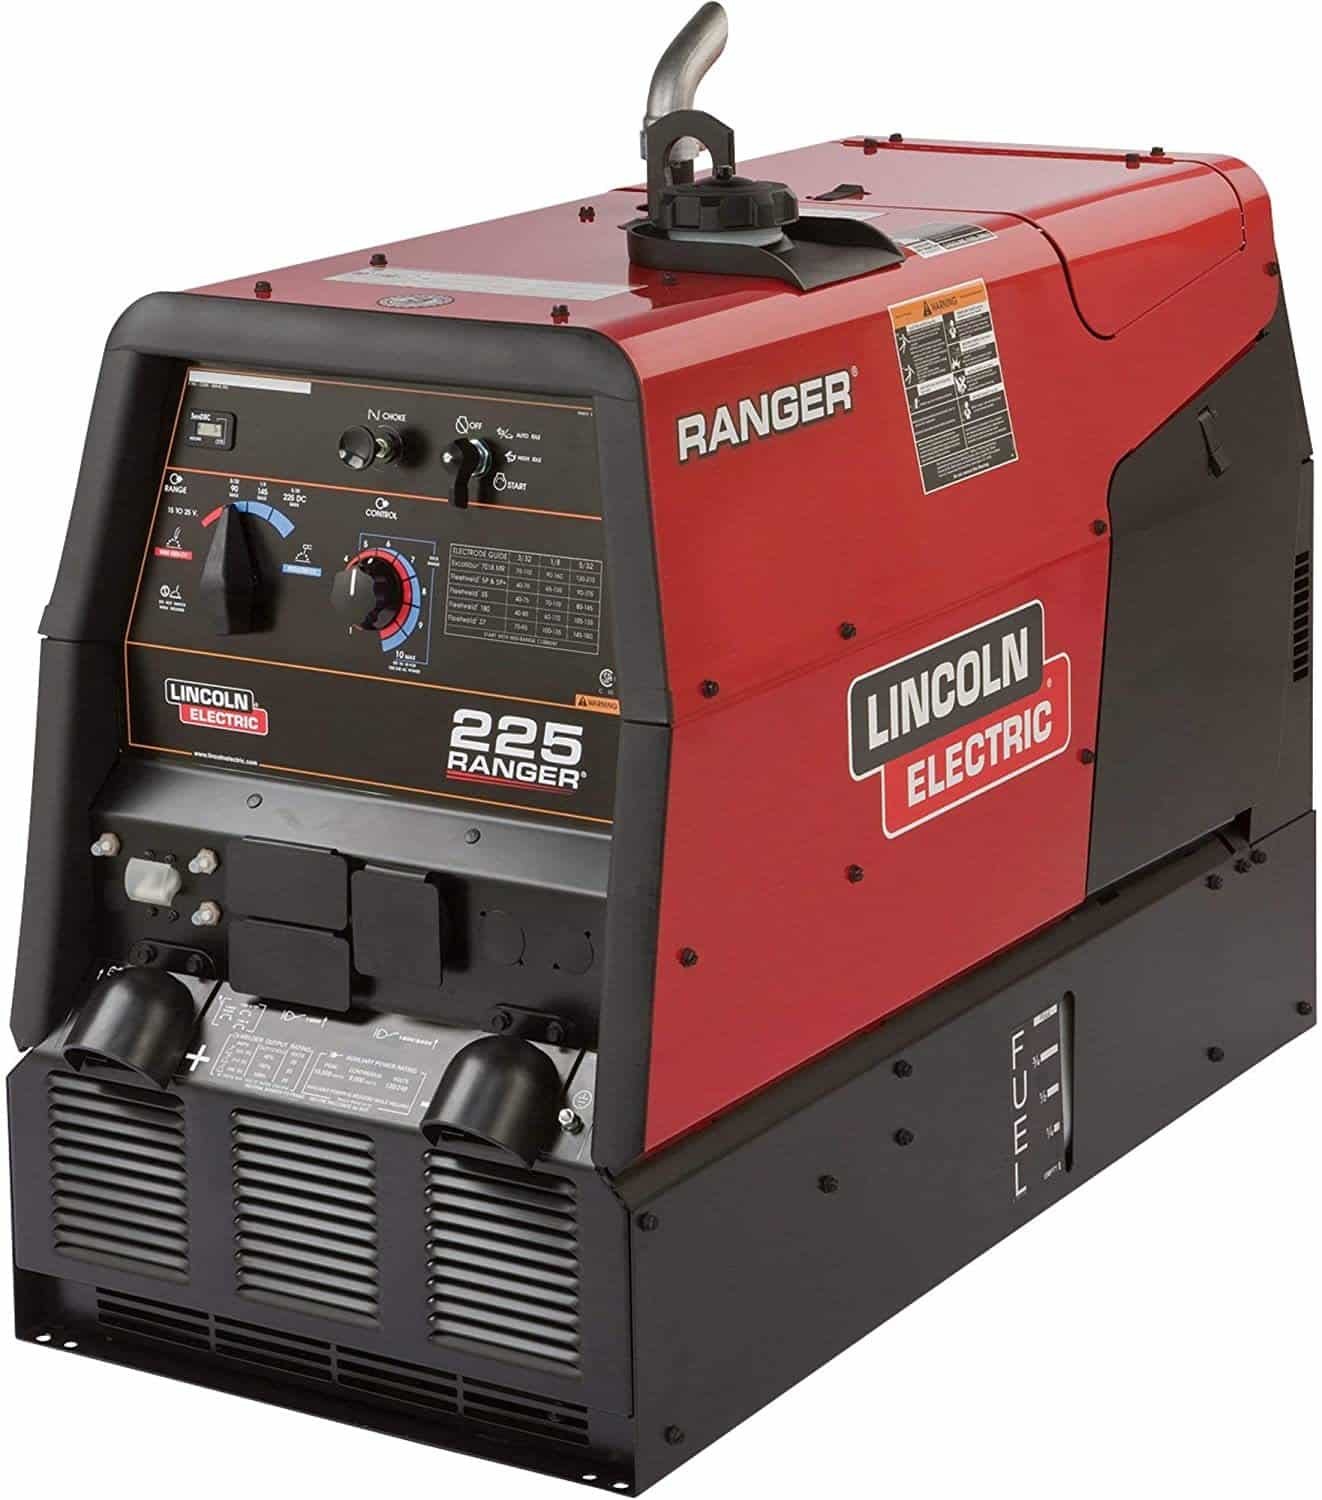 Lincoln Electri Ranger 225 Multi Process Generator